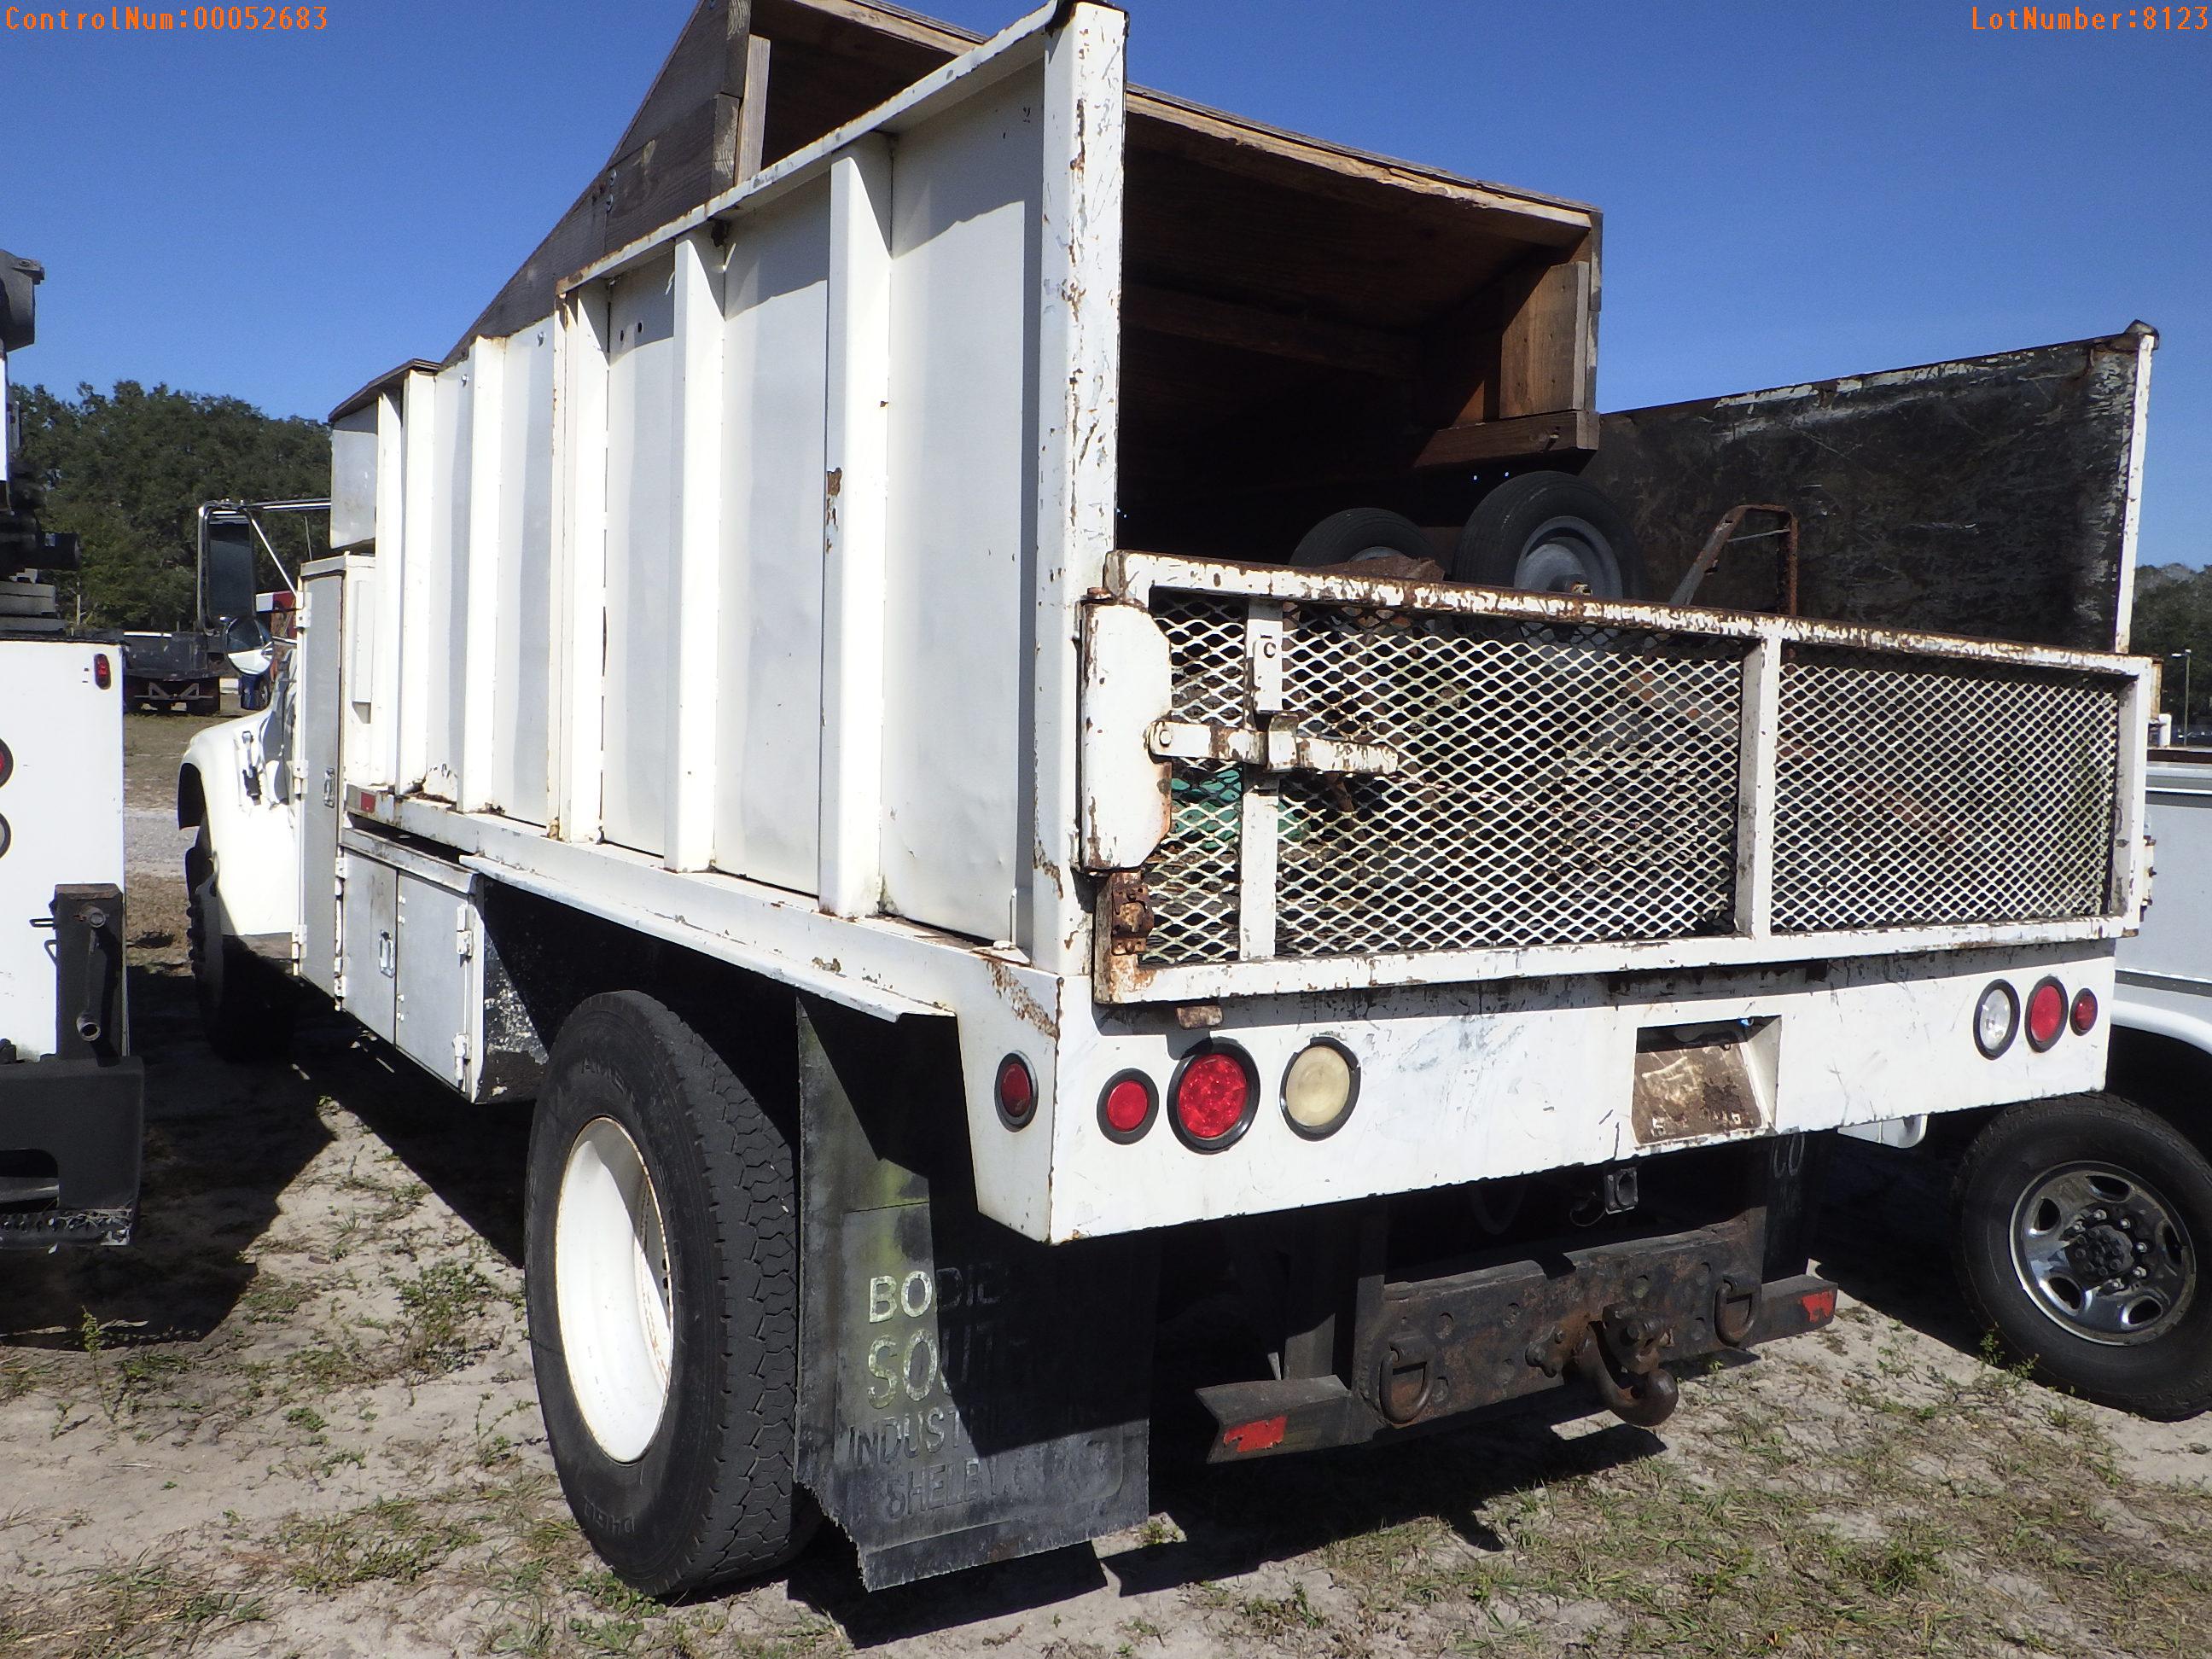 2-08123 (Trucks-Dump)  Seller:Private/Dealer 1997 FORD F800